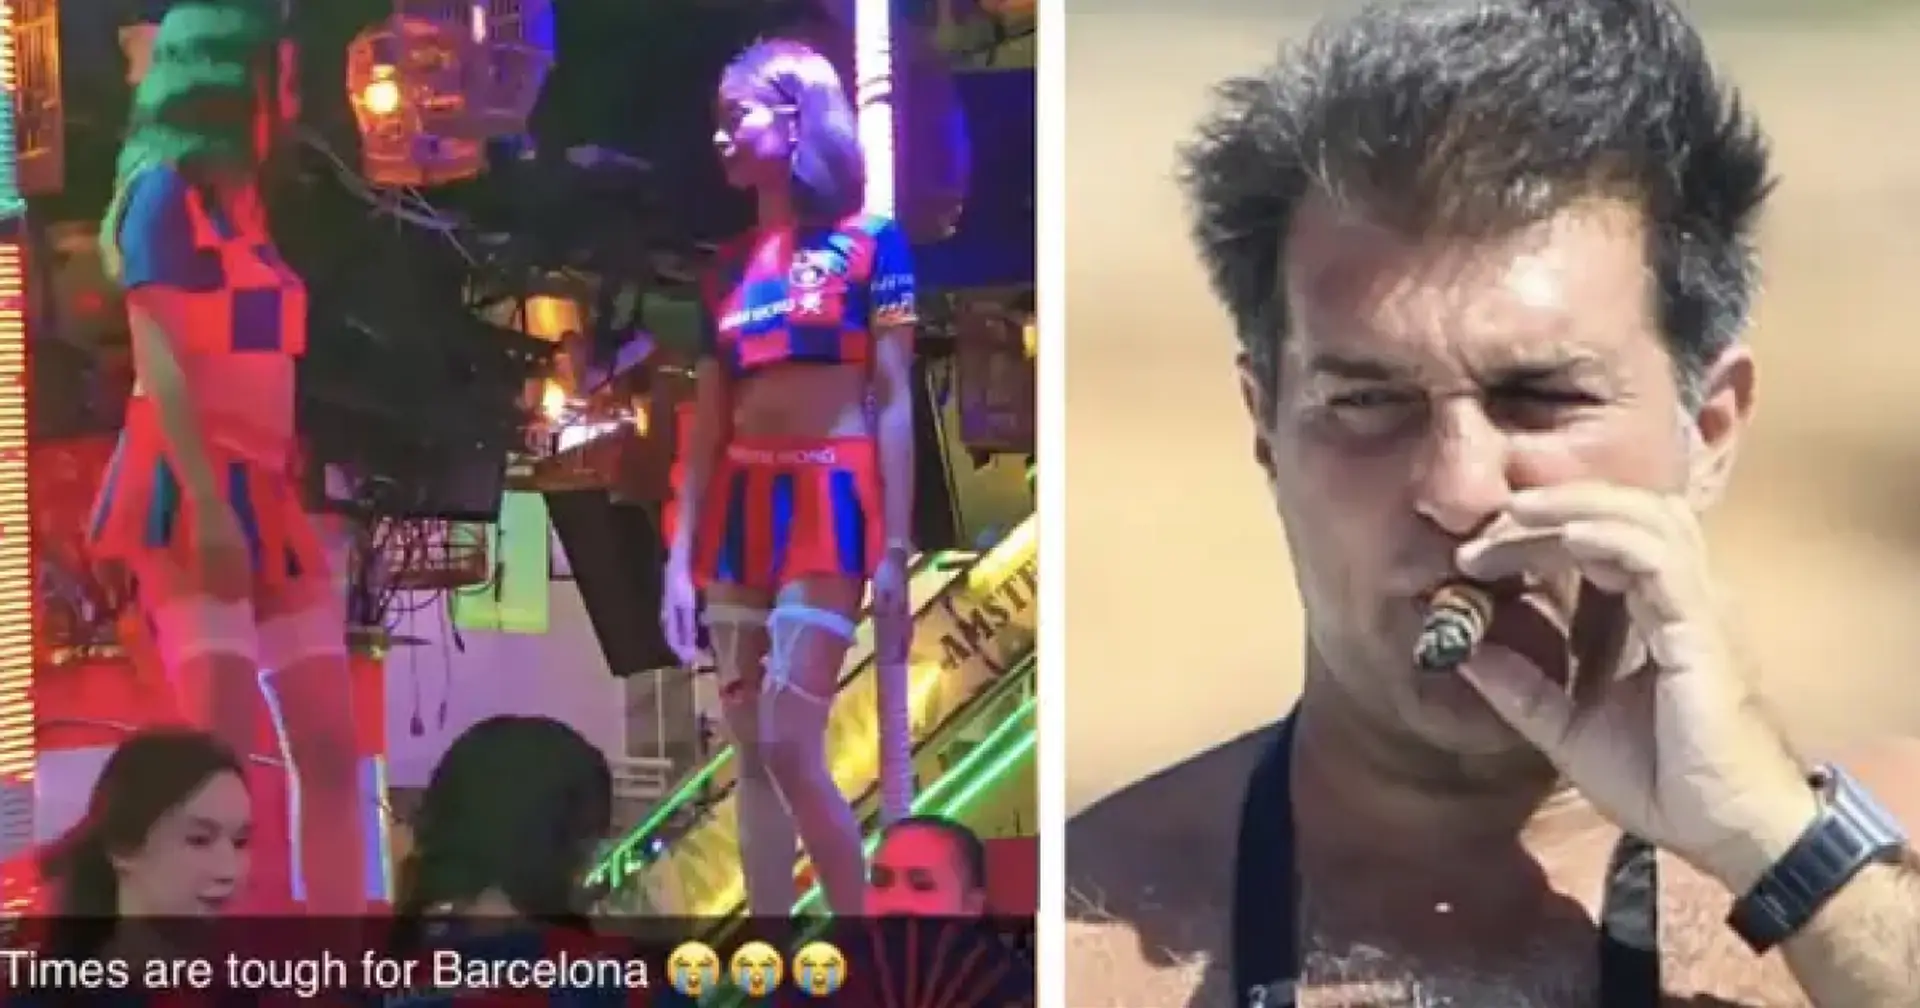 Ein weiterer Laporta-Hebel: Video mit thailändischen Stripperinnen in gefälschten Barça-Outfits geht viral